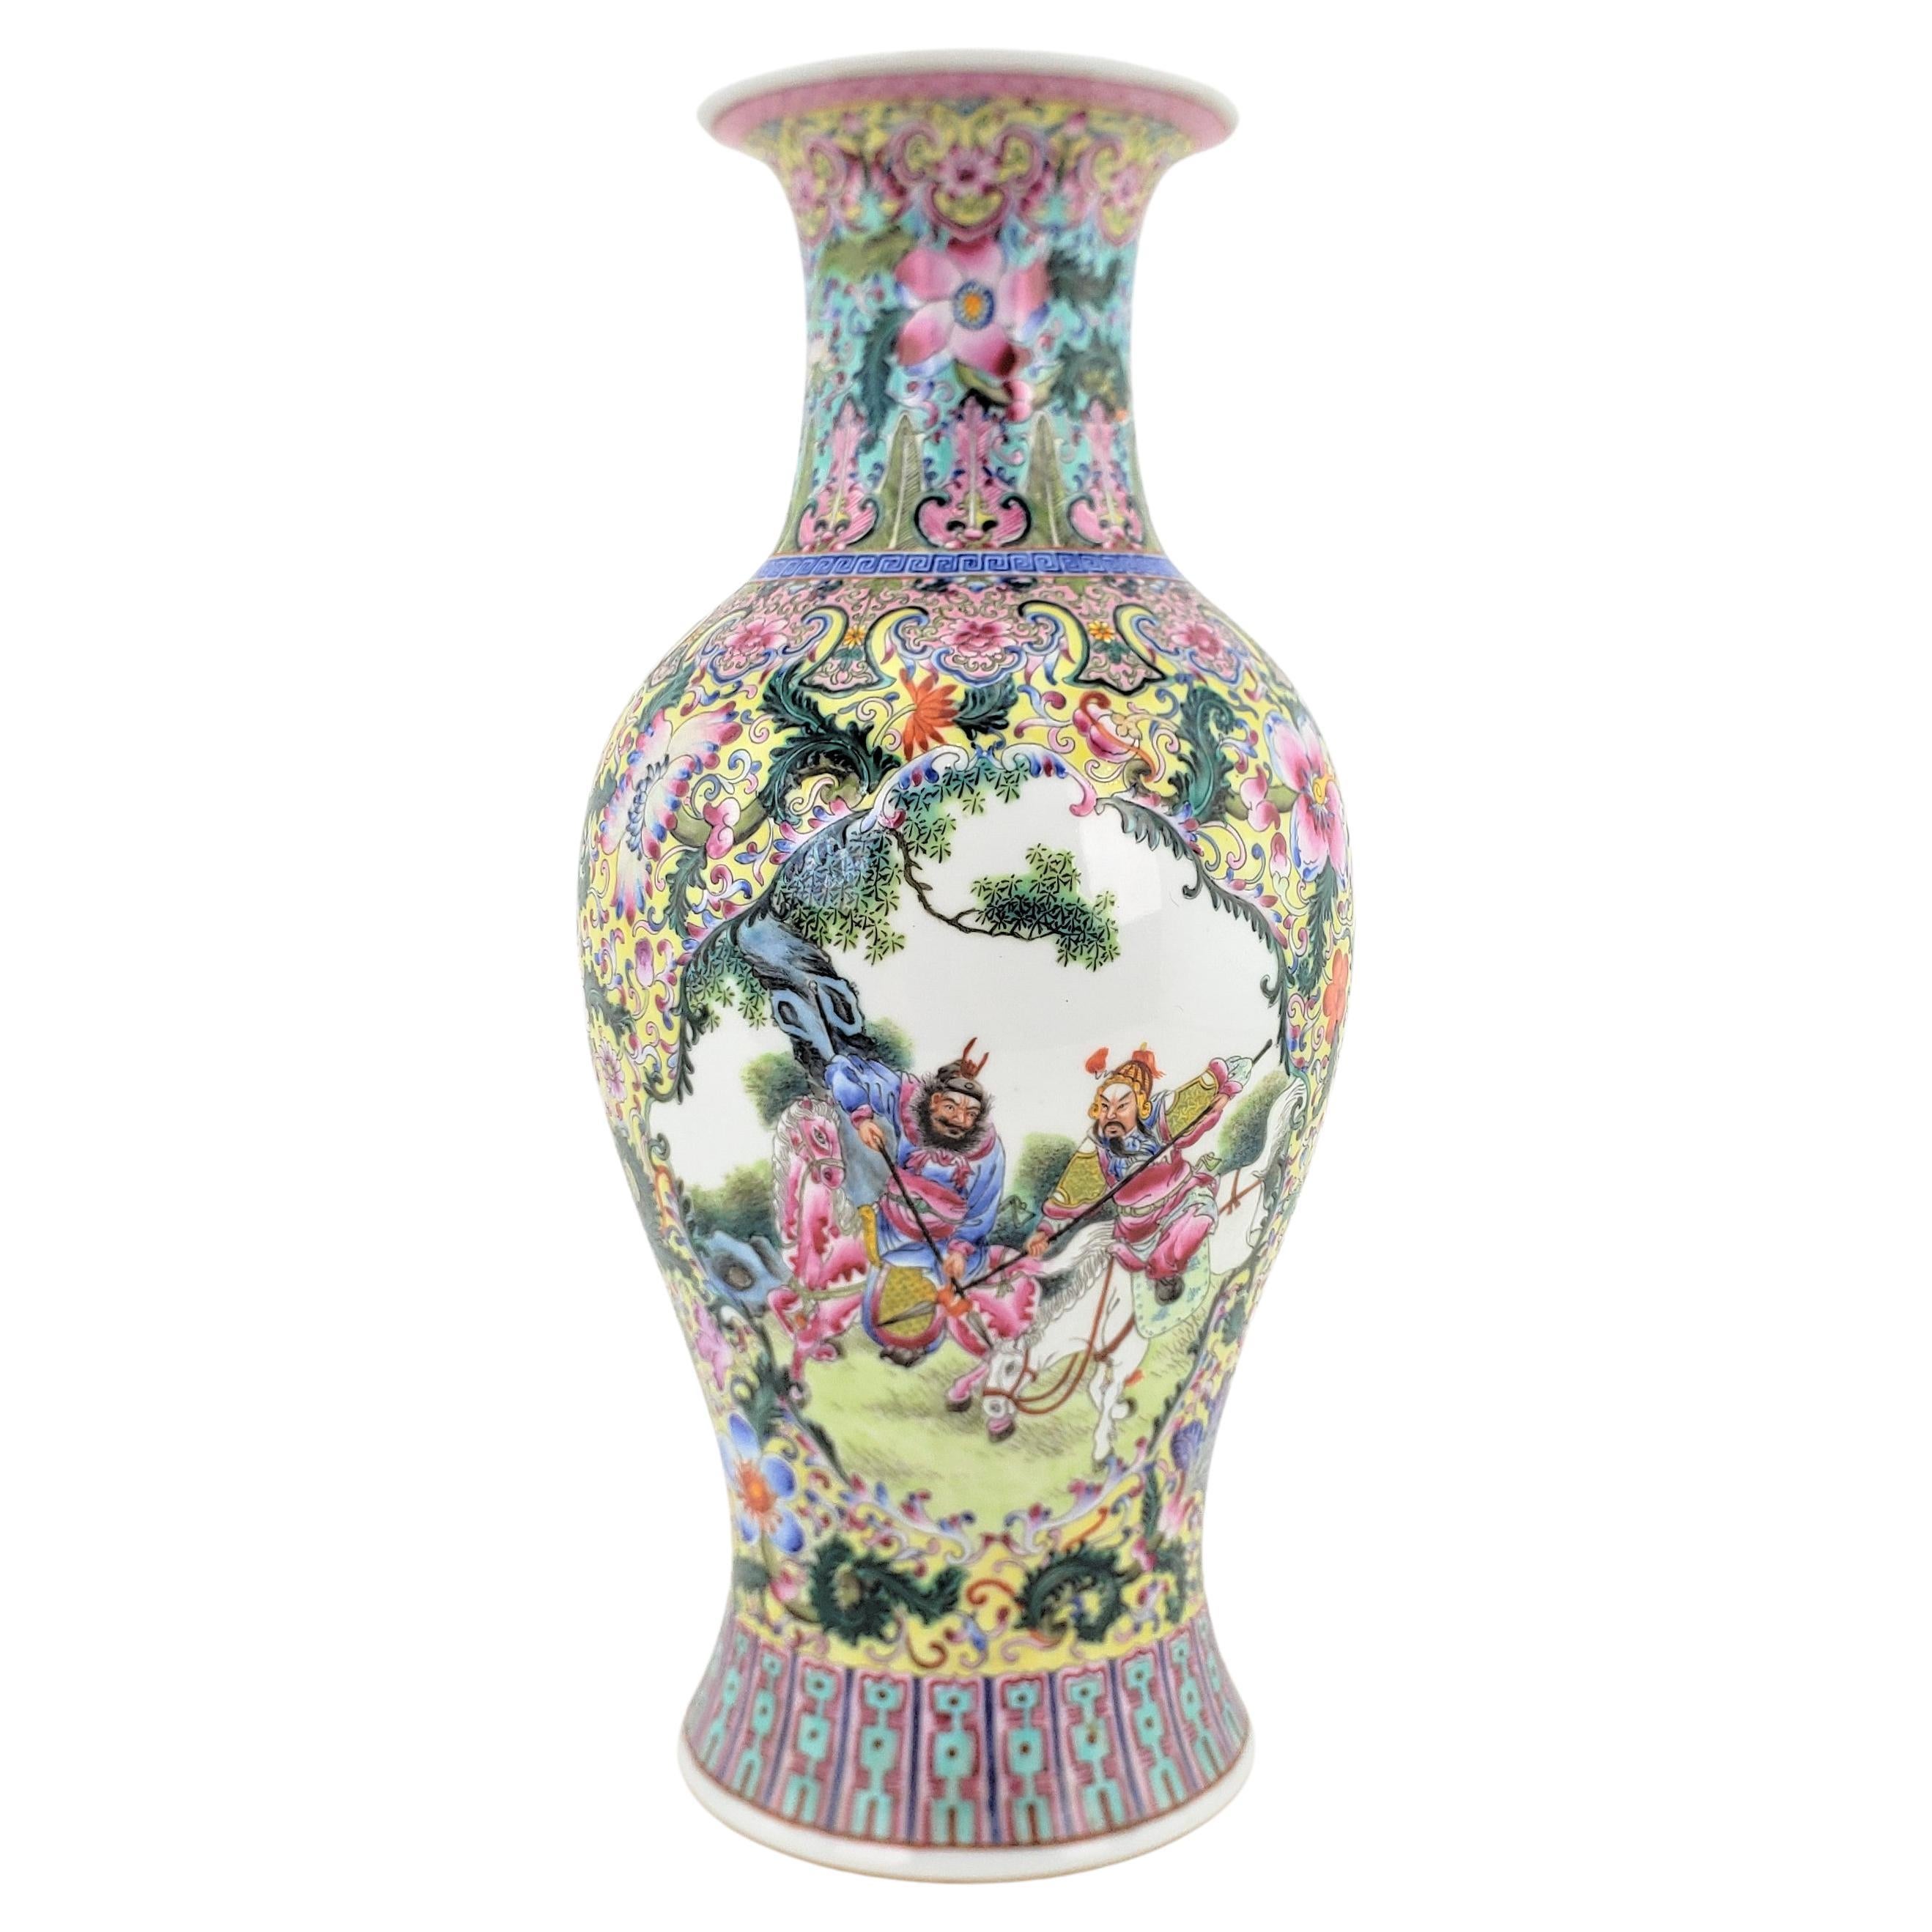 Antique Chinese Republic Era Ornately Hand-Painted Vase or Table Lamp Base